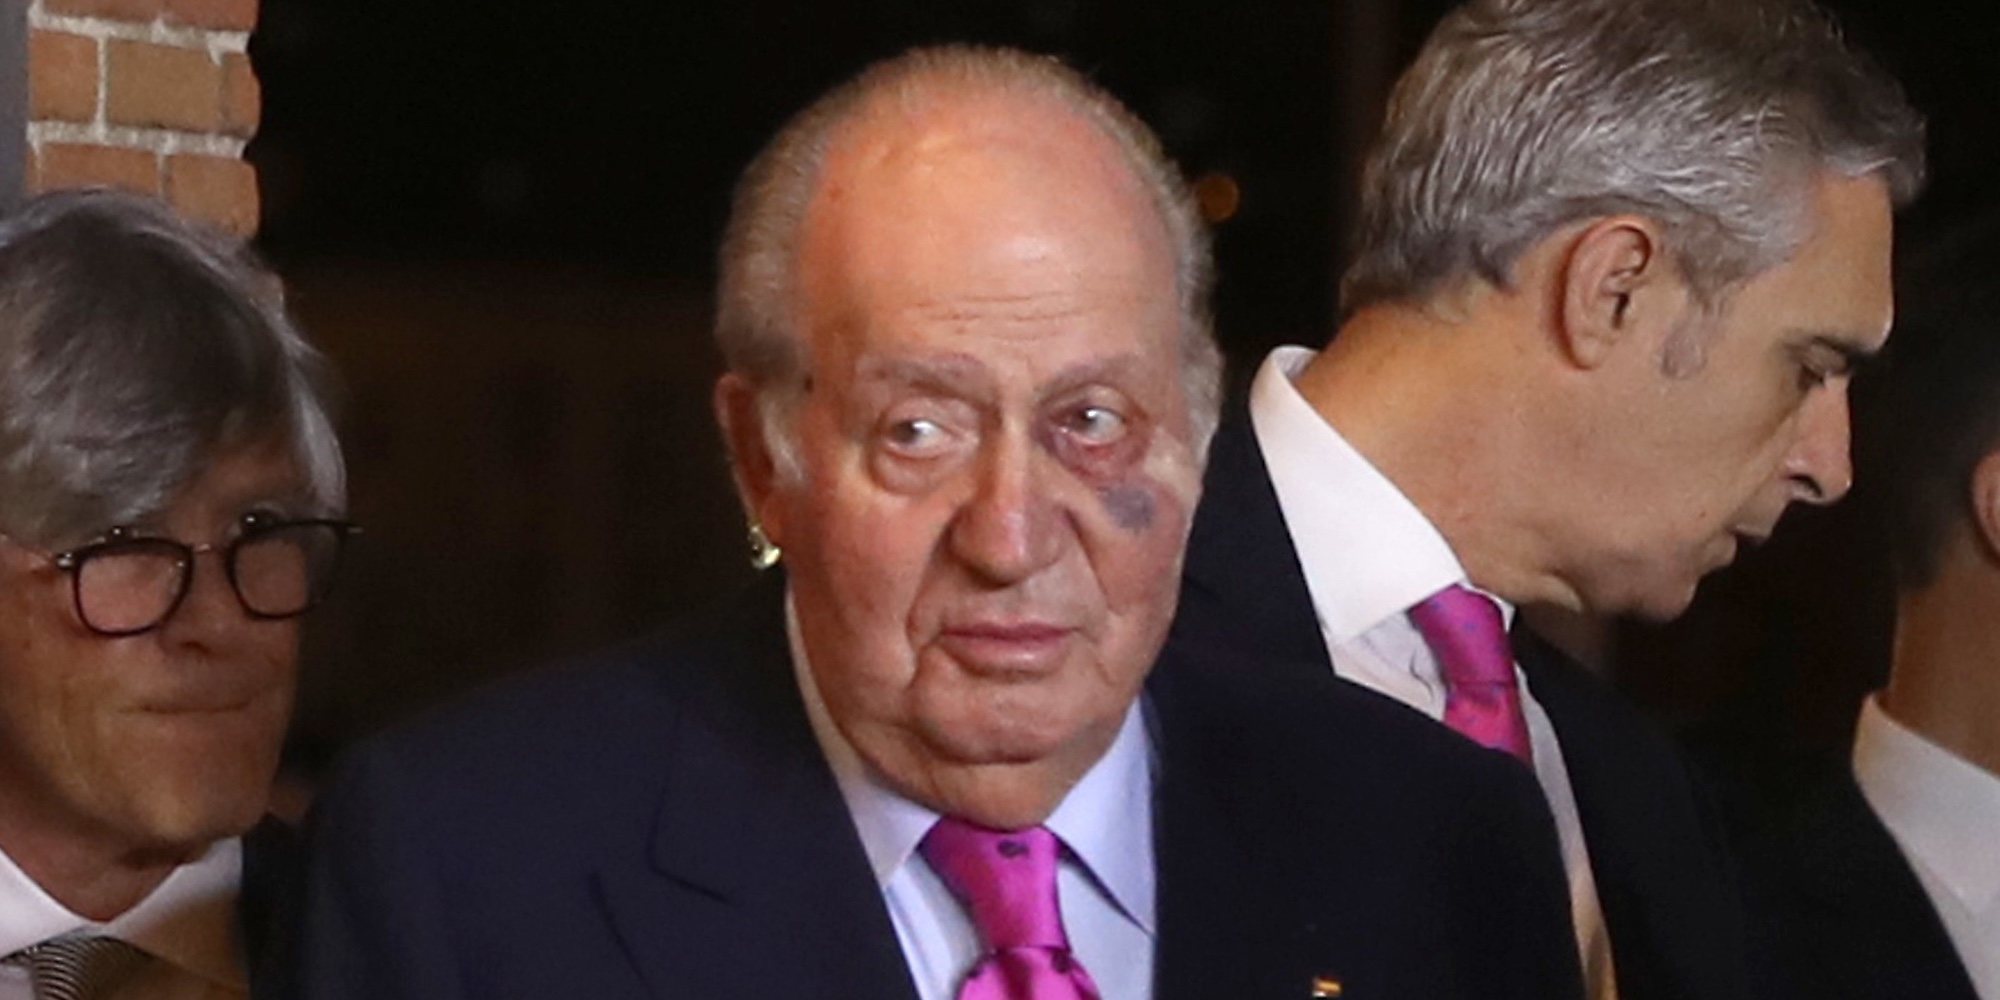 Los asiduos viajes privados del Rey Juan Carlos a Estados Unidos se suman a un hematoma sospechoso en el ojo